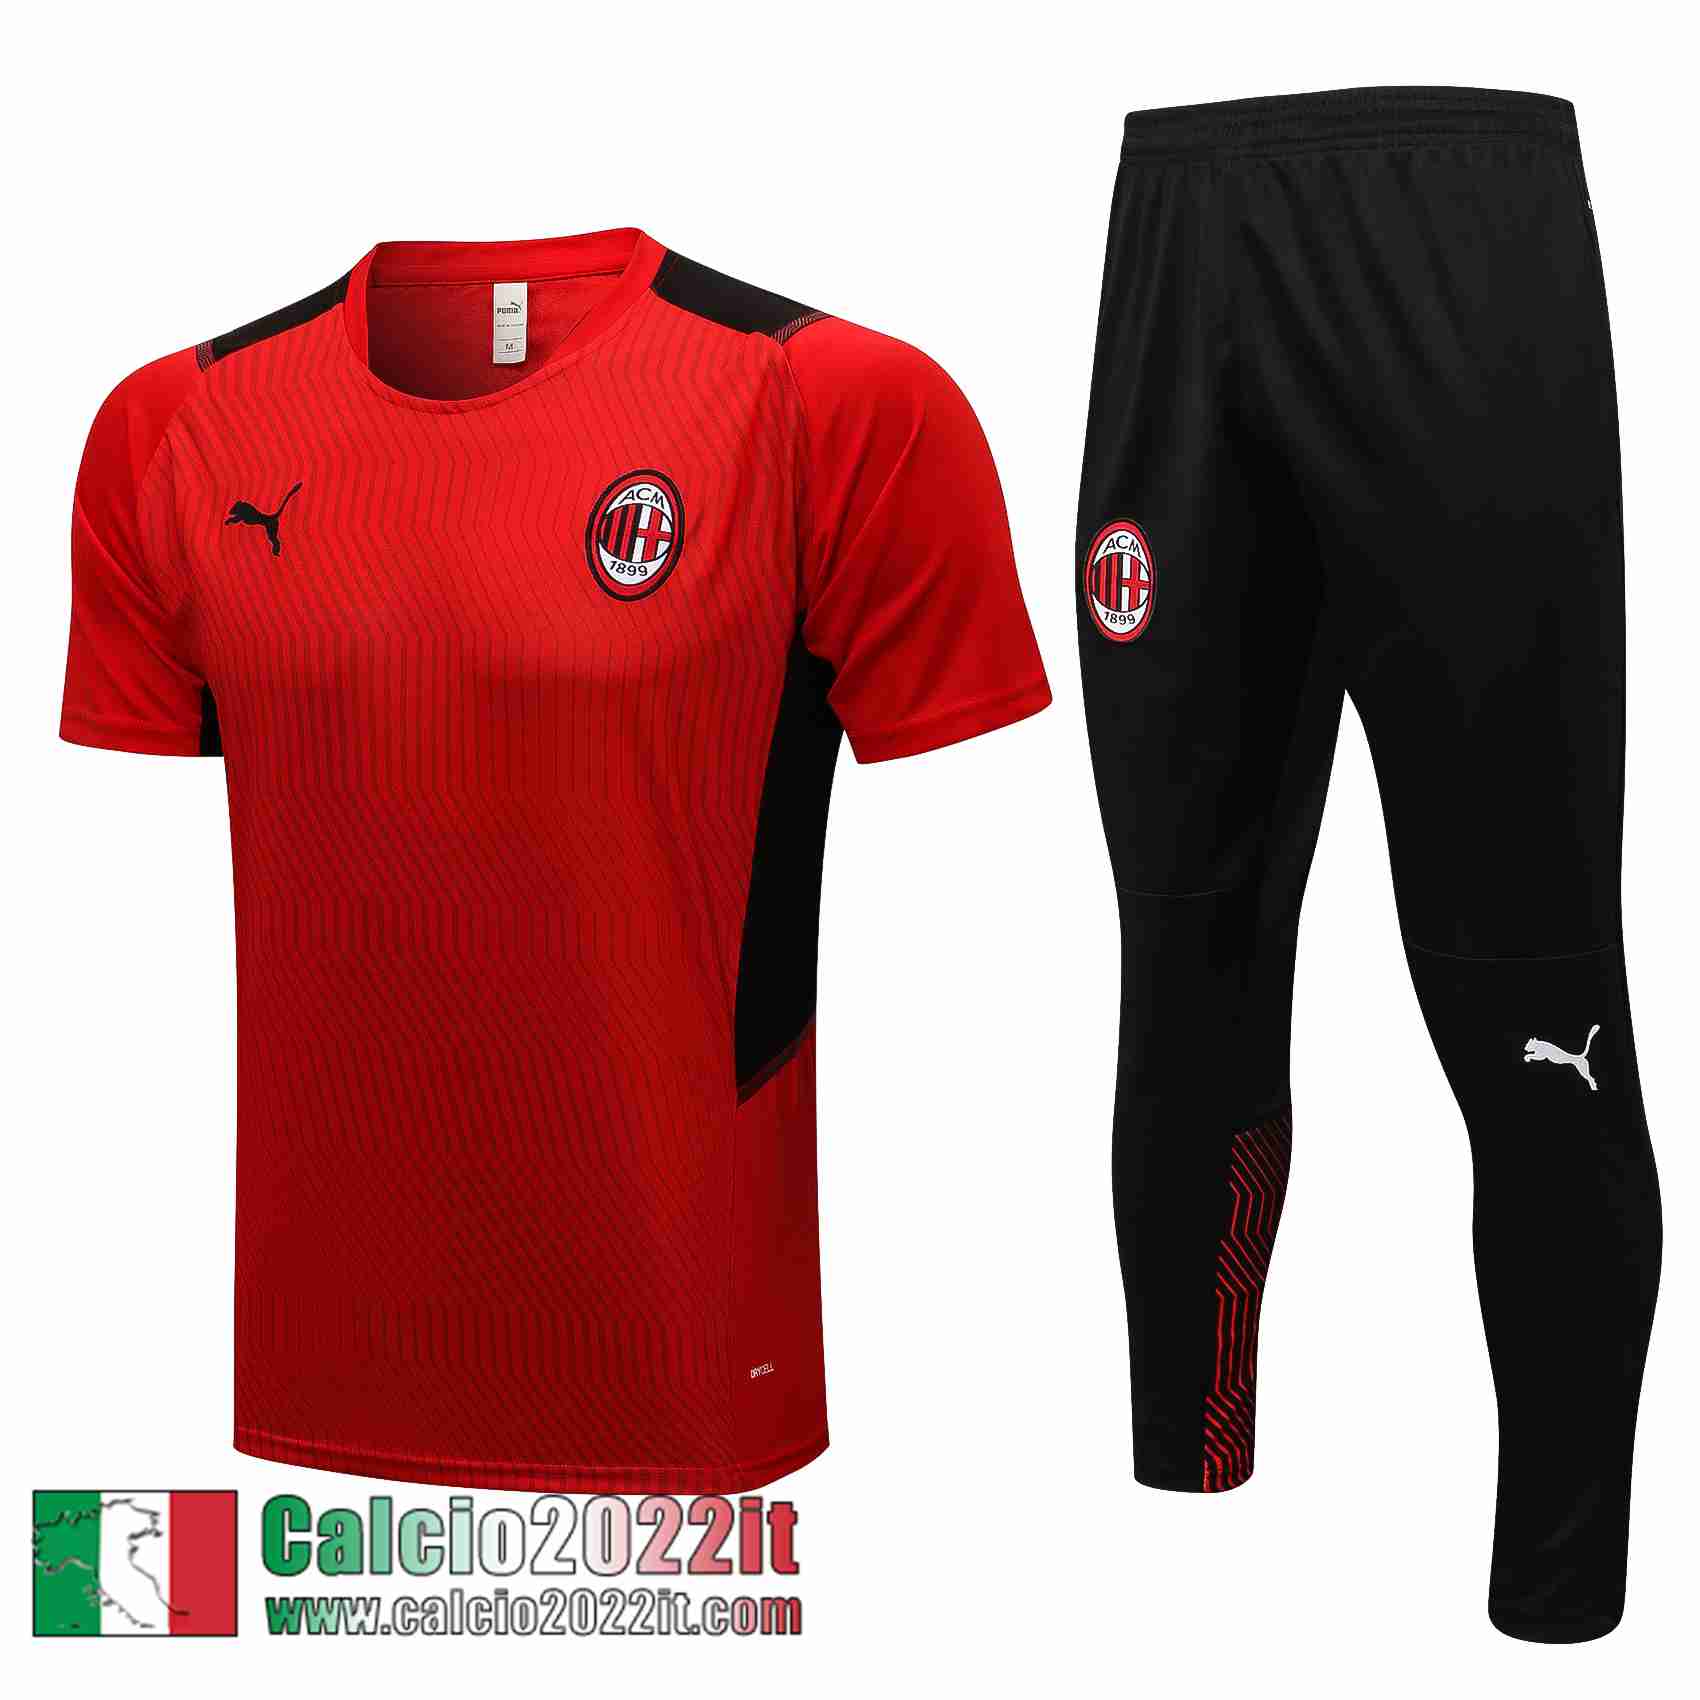 AC Milan T-Shirt rosso 2021 2022 Uomo PL195